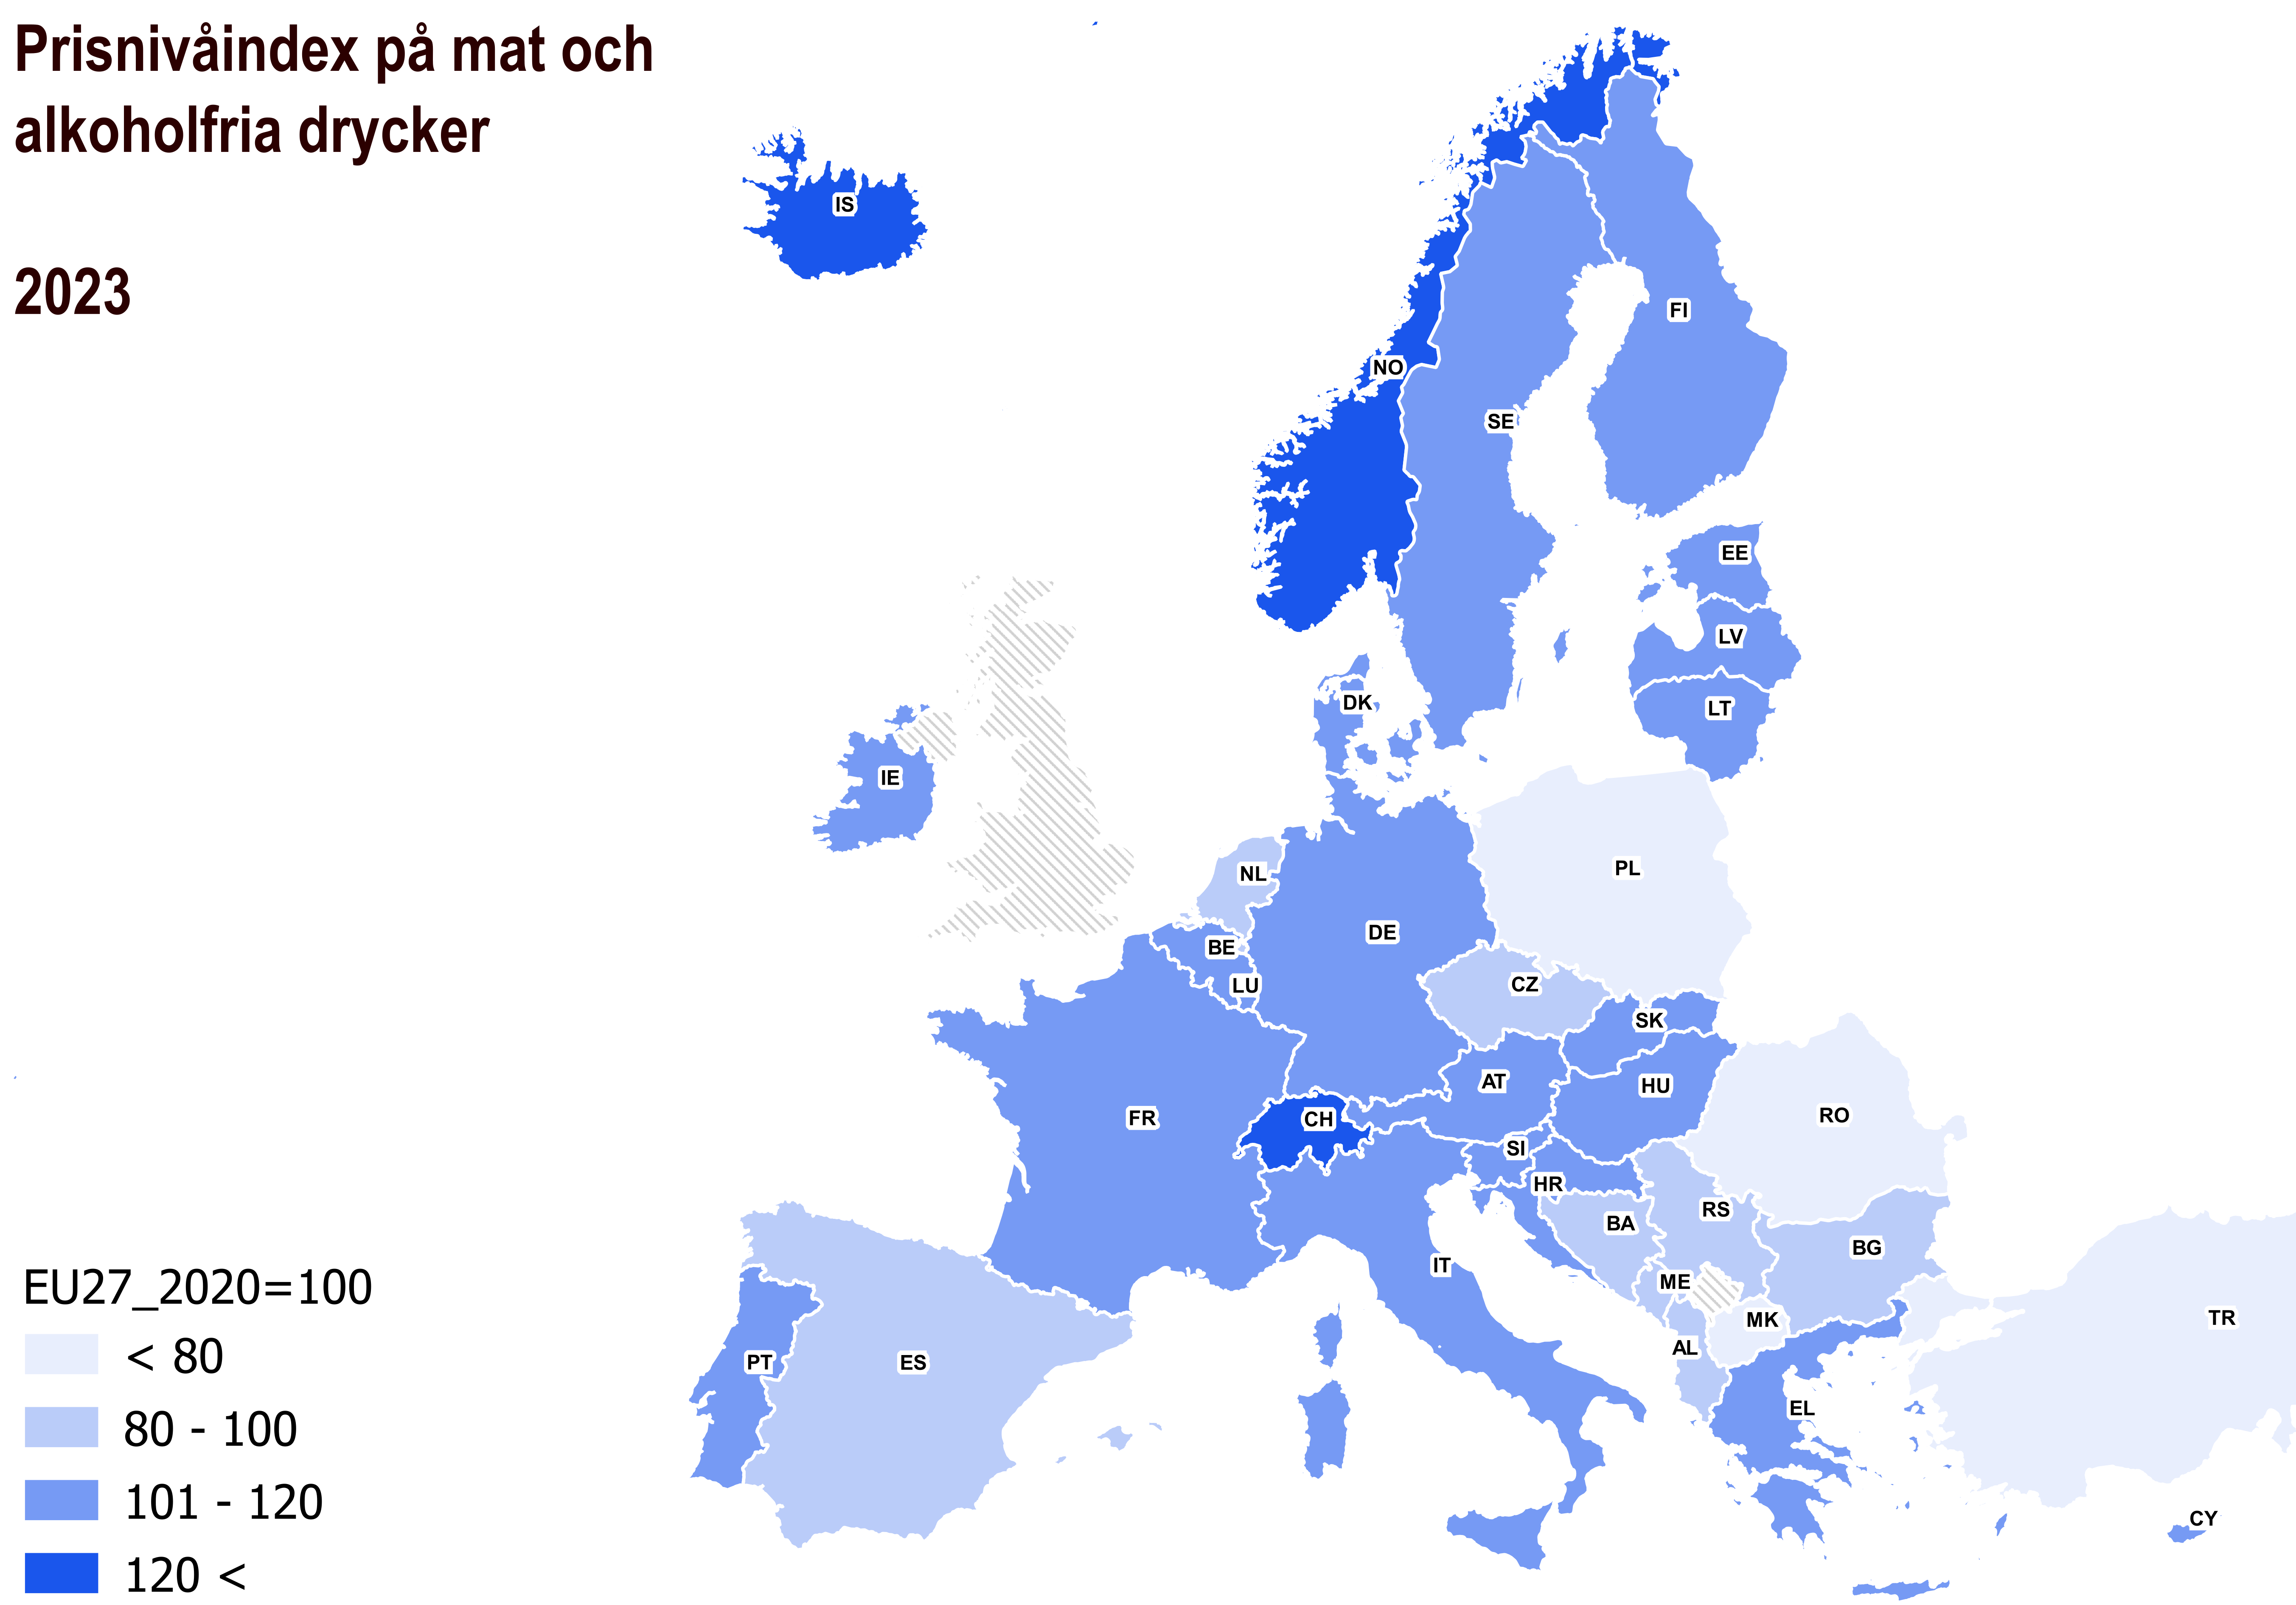 Prisnivåindex på mat och alkoholfria drycker illustrerad på kartan. EFTA länderna Schweiz, Island och Norge hade den högsta prisnivån. Länderna med den lägsta prisnivån var Turkiet, Nordmakedonien, Rumänien och Polen. Finlands prisnivå var 10 % över EU-genomsnittet.